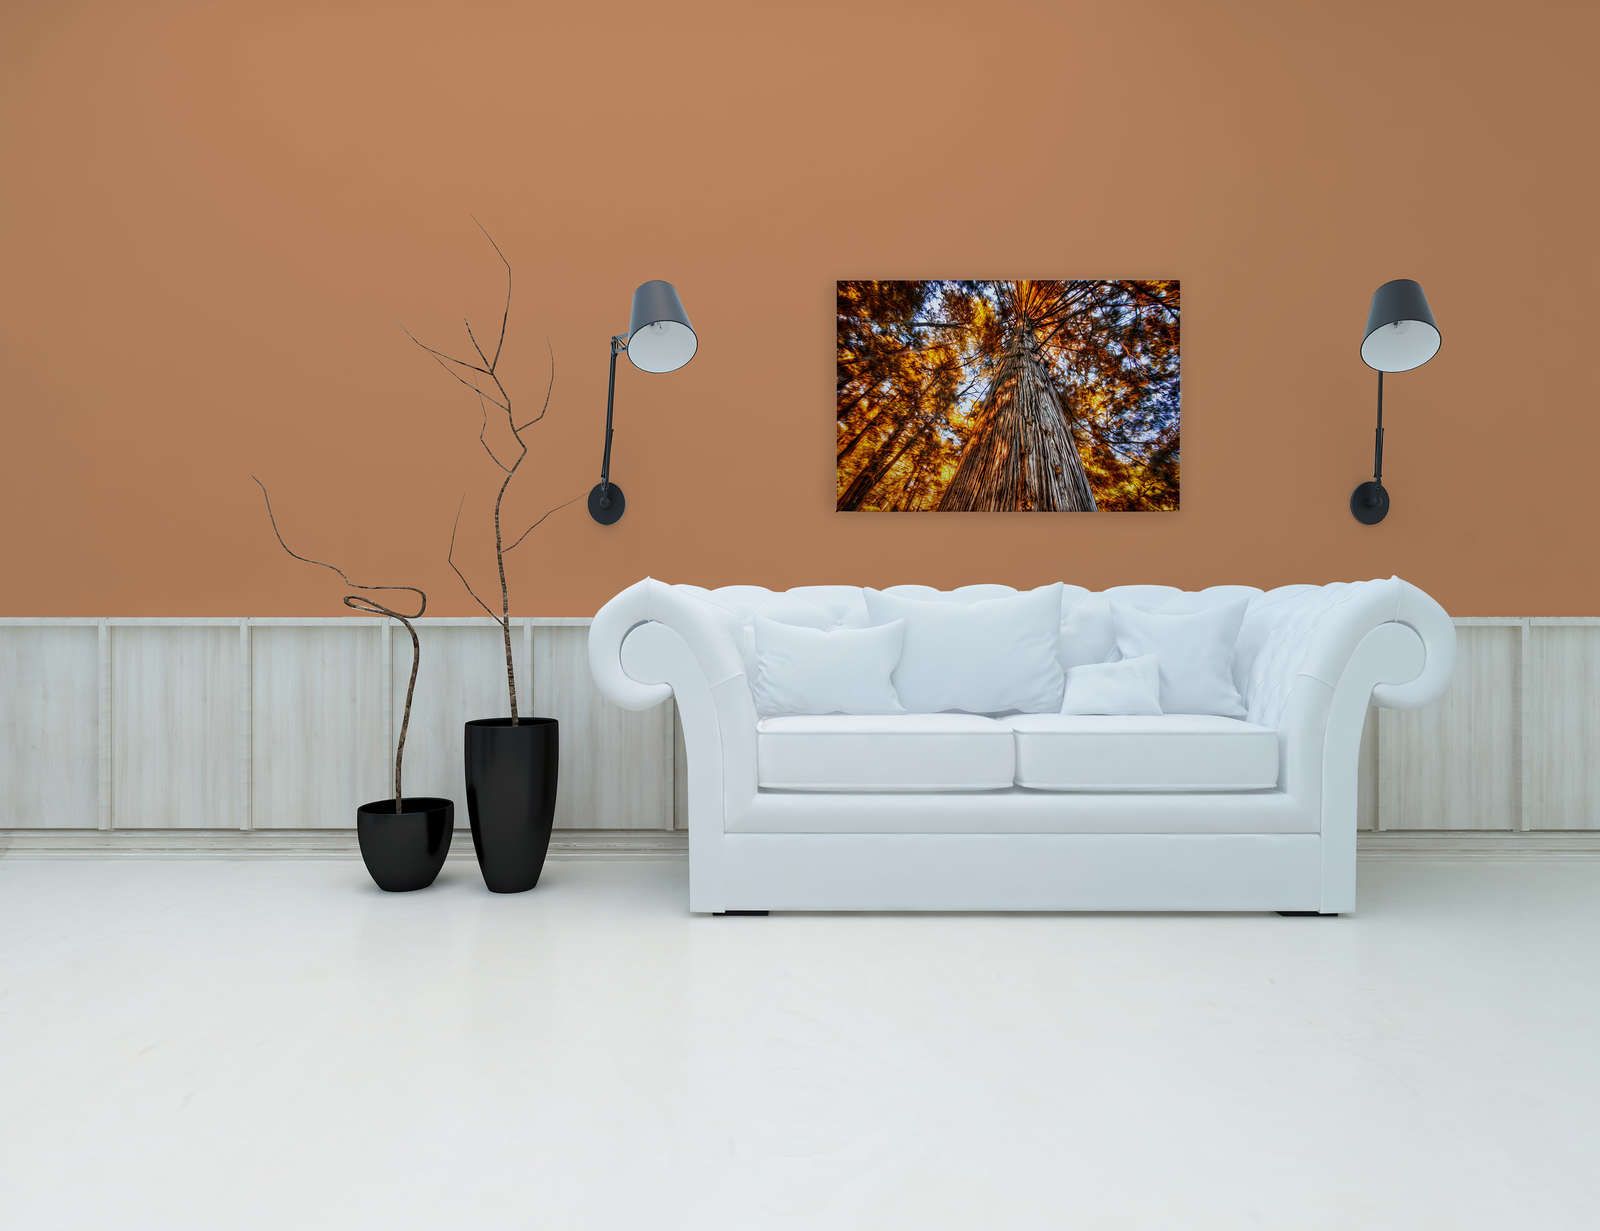             Canvas schilderij Blik in de boomtop in oplichtende kleuren - 0,90 m x 0,60 m
        